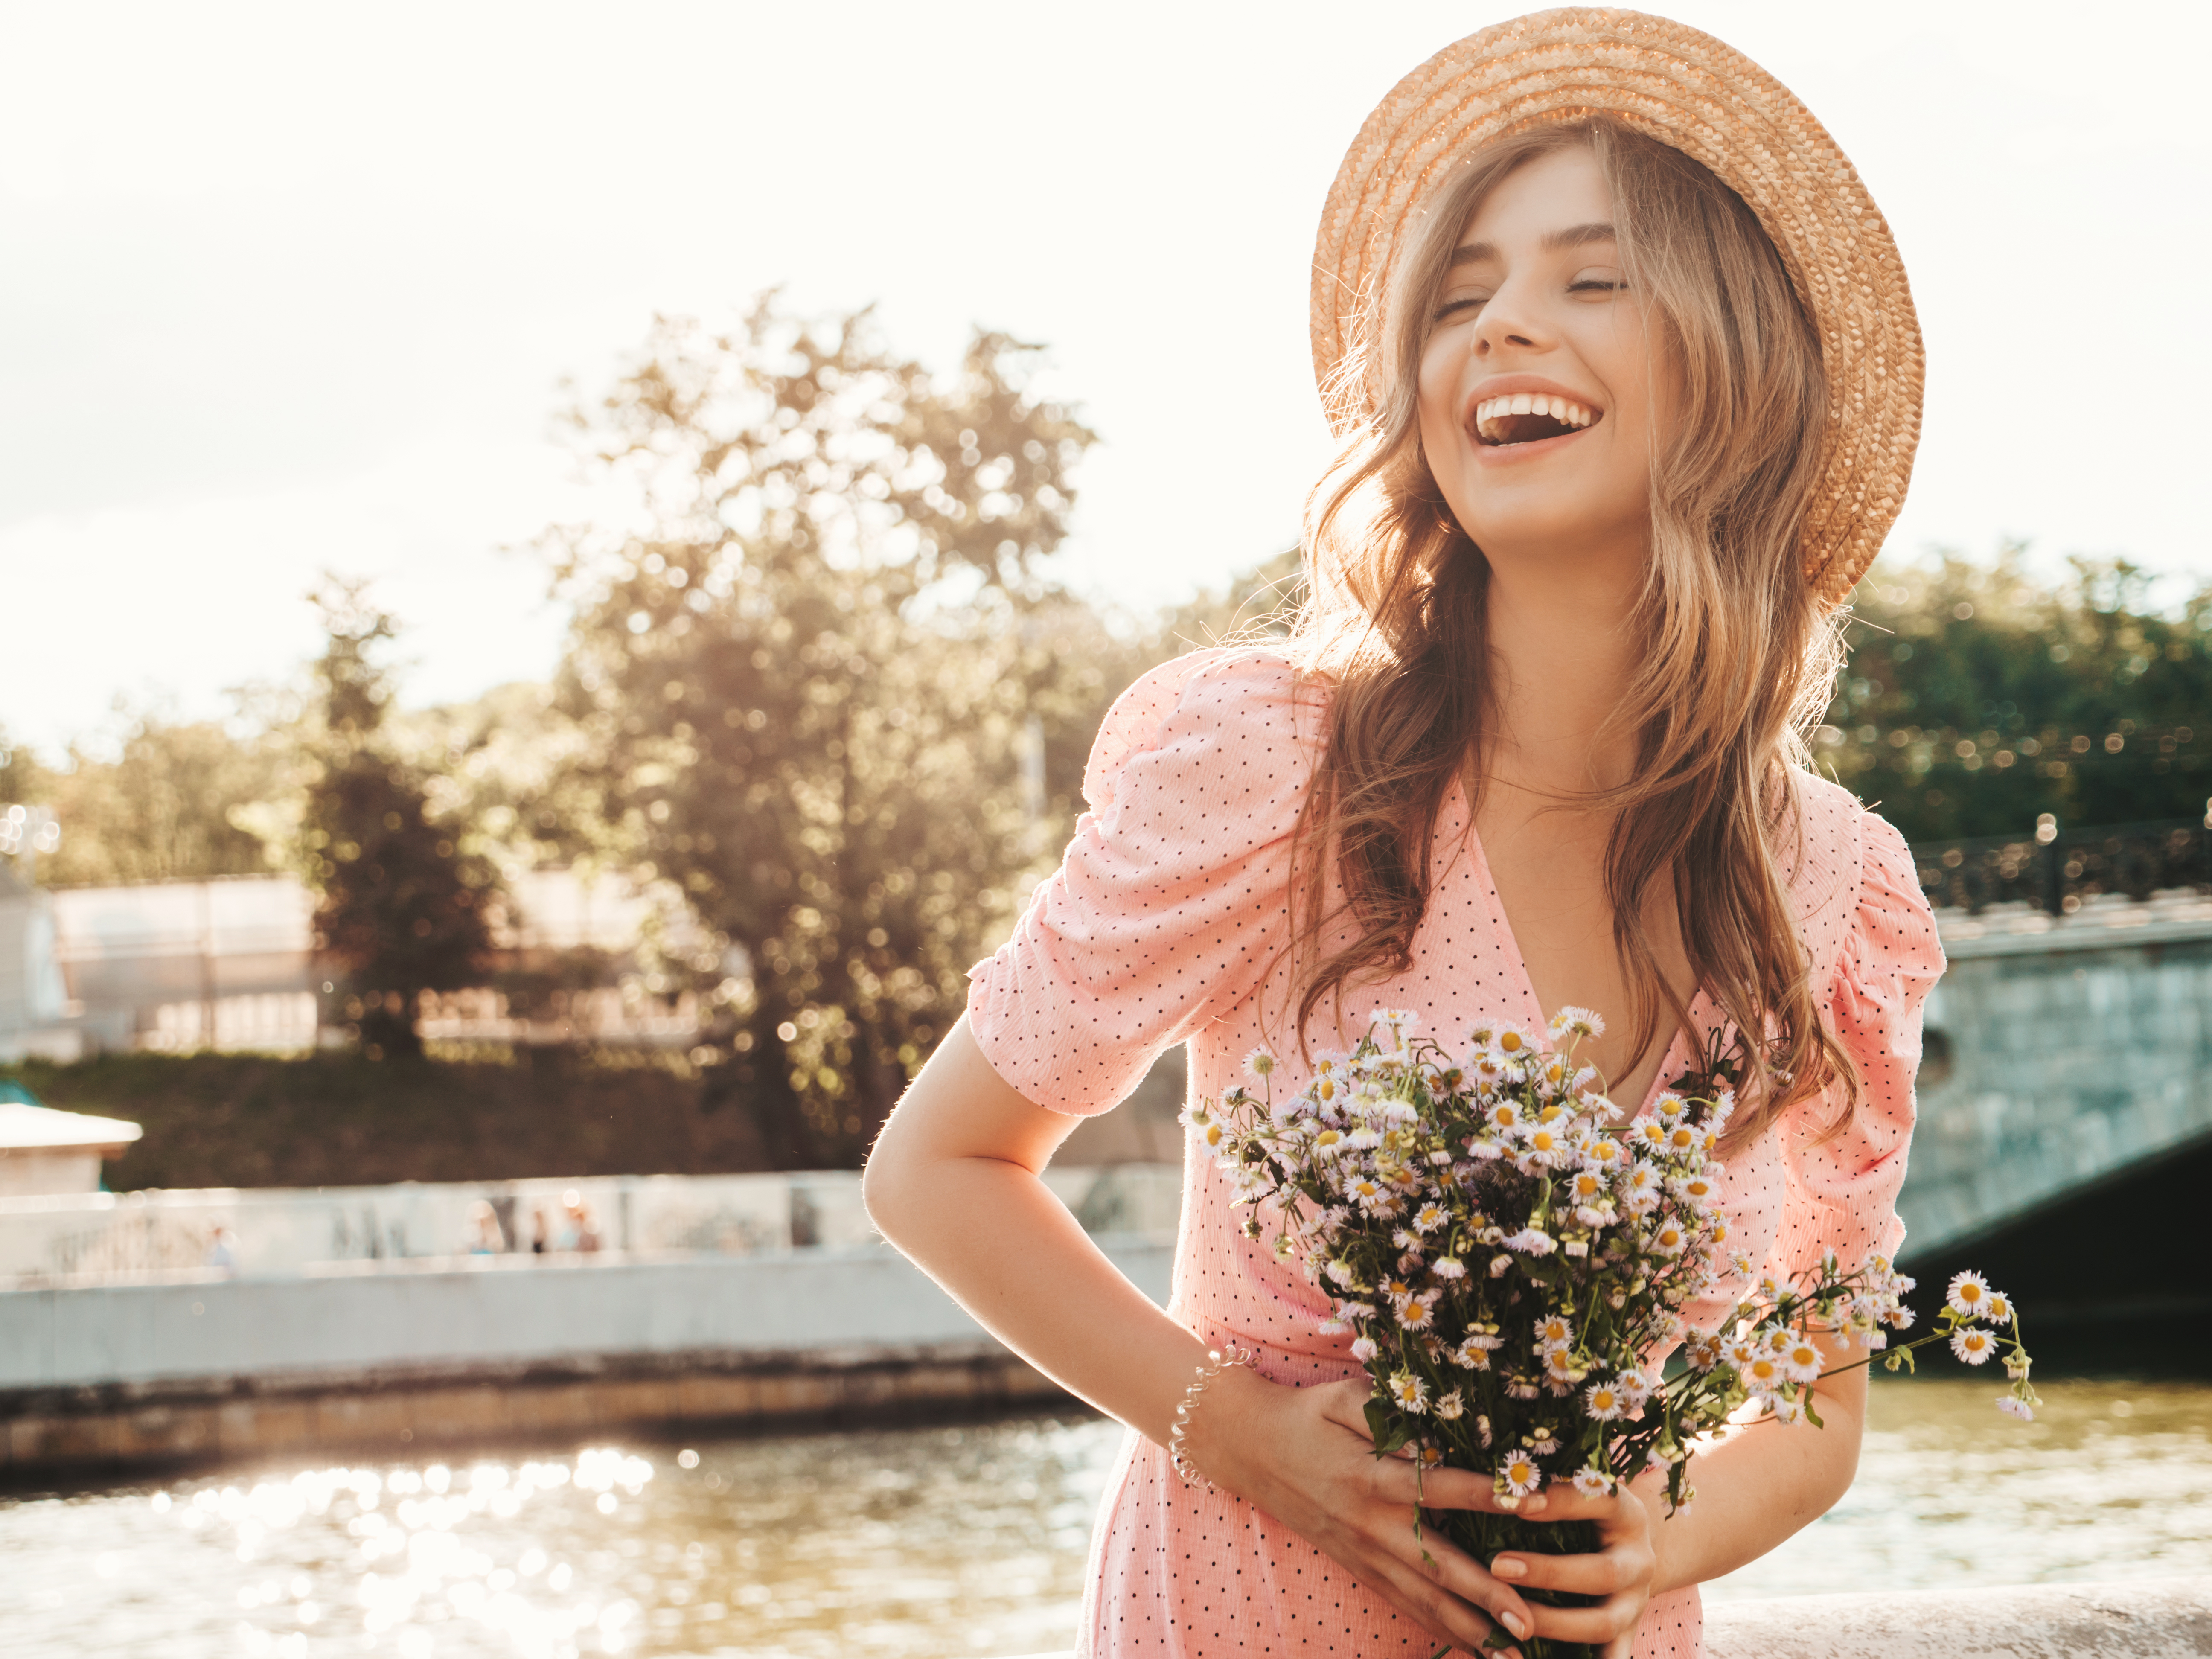 Una joven sonriente sosteniendo flores | Fuente: Shutterstock